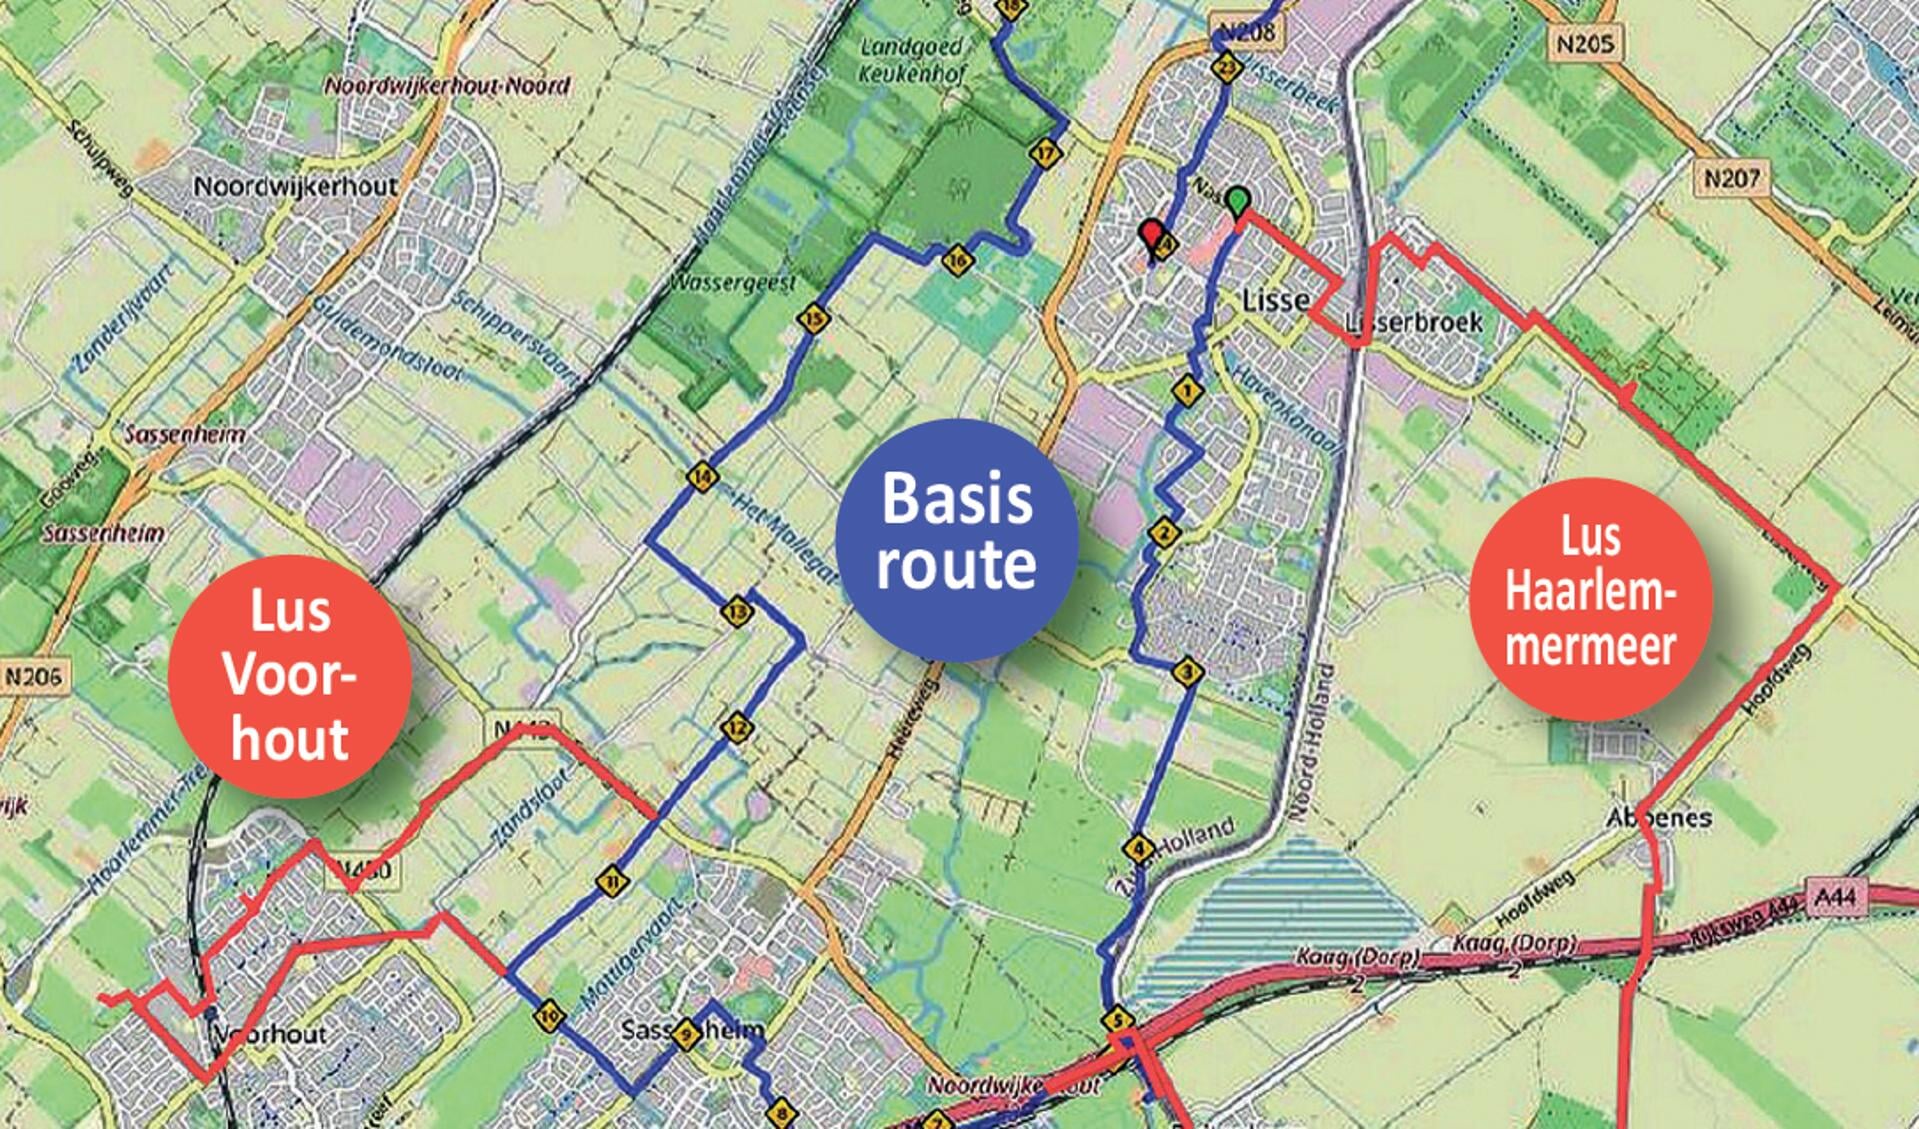 Kaartje waarop je de verschillende routes ziet van Fiets zoekt Boer.